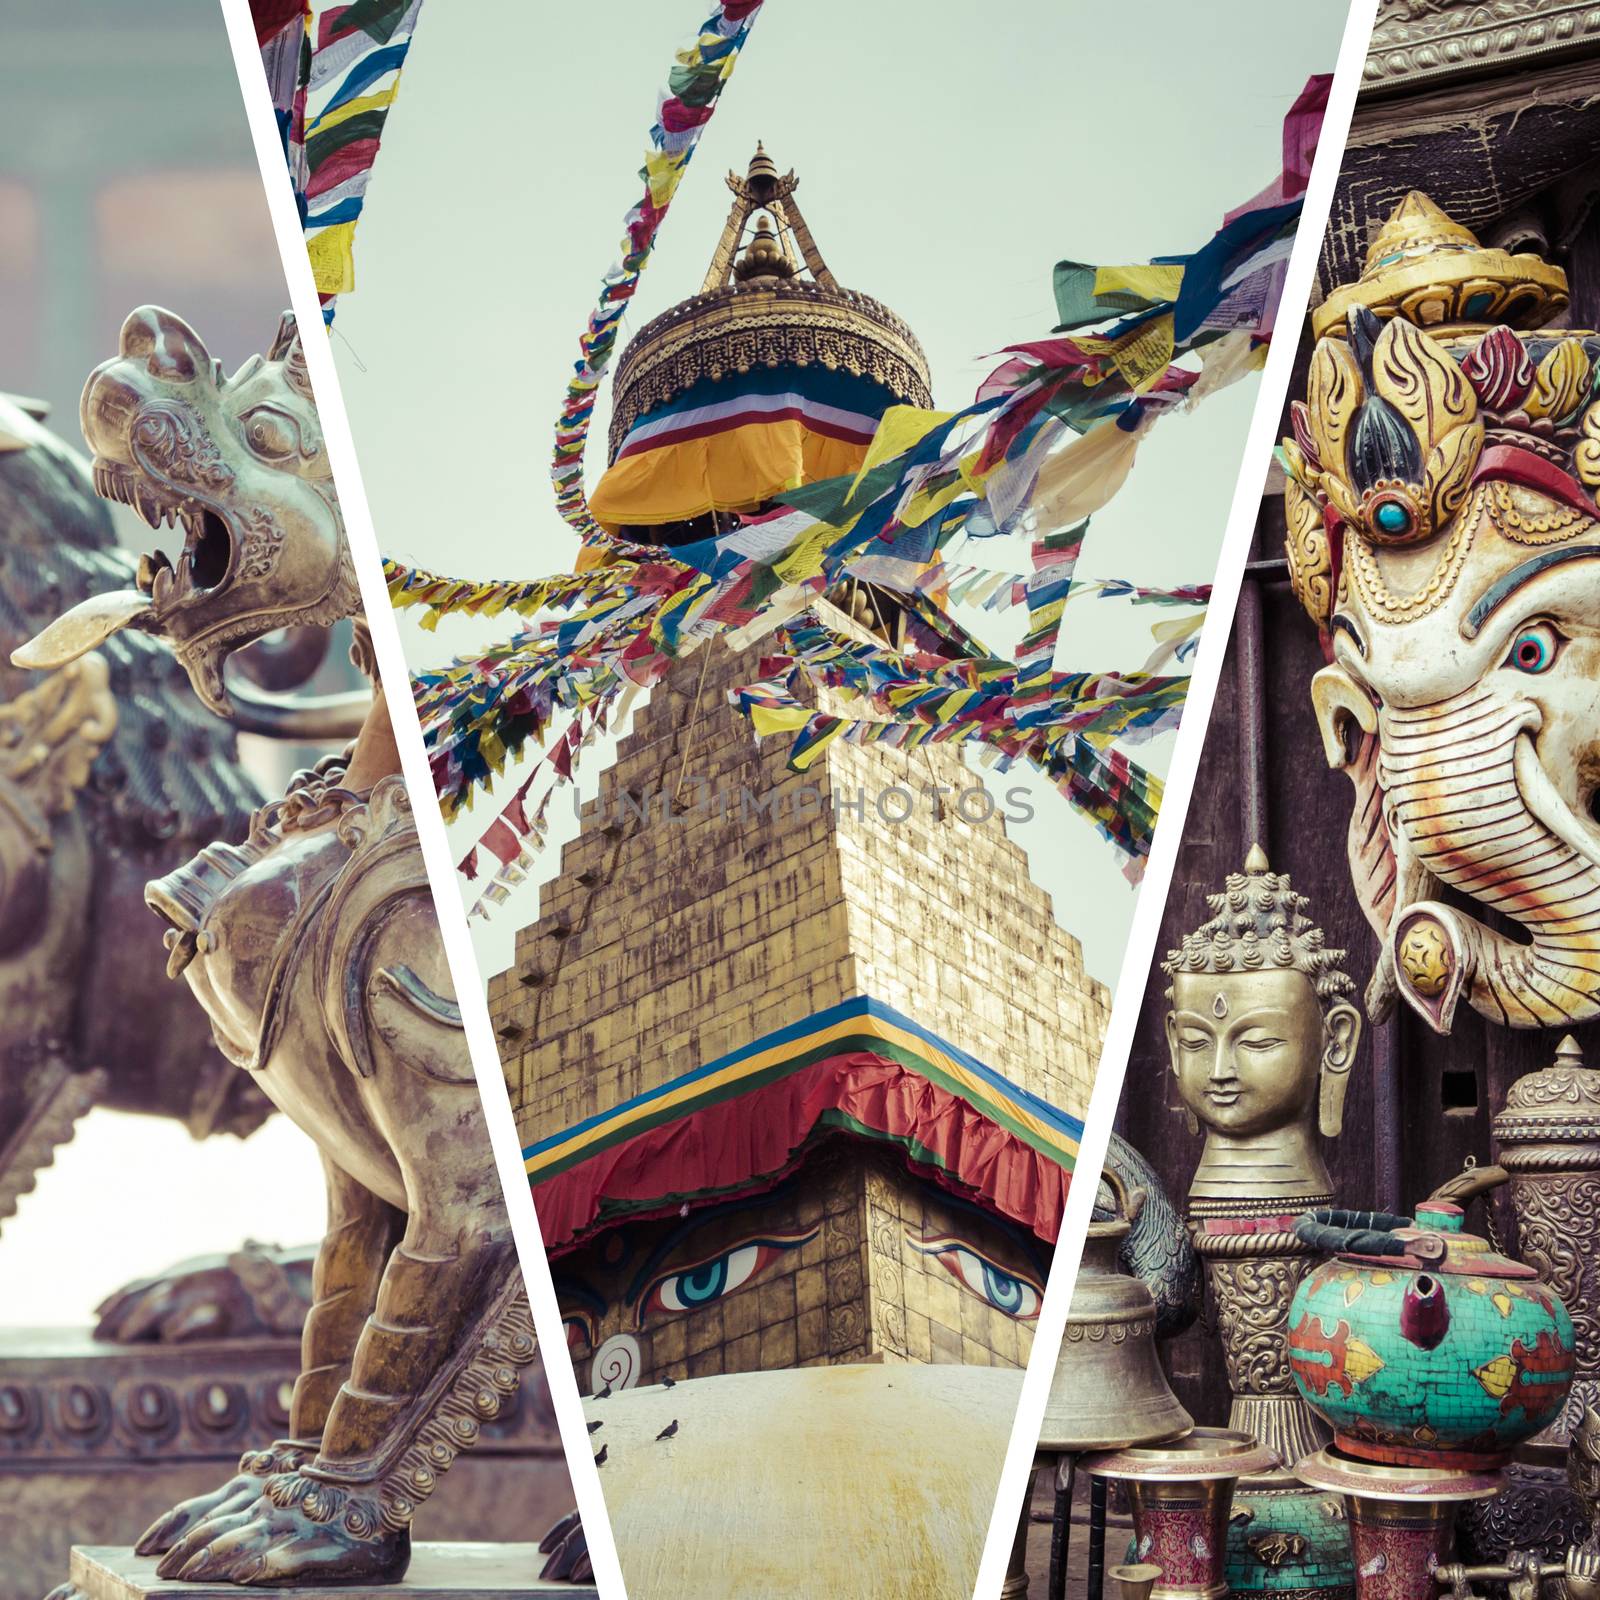 Collage of Kathmandu (Nepal) images - travel background (my photos)

